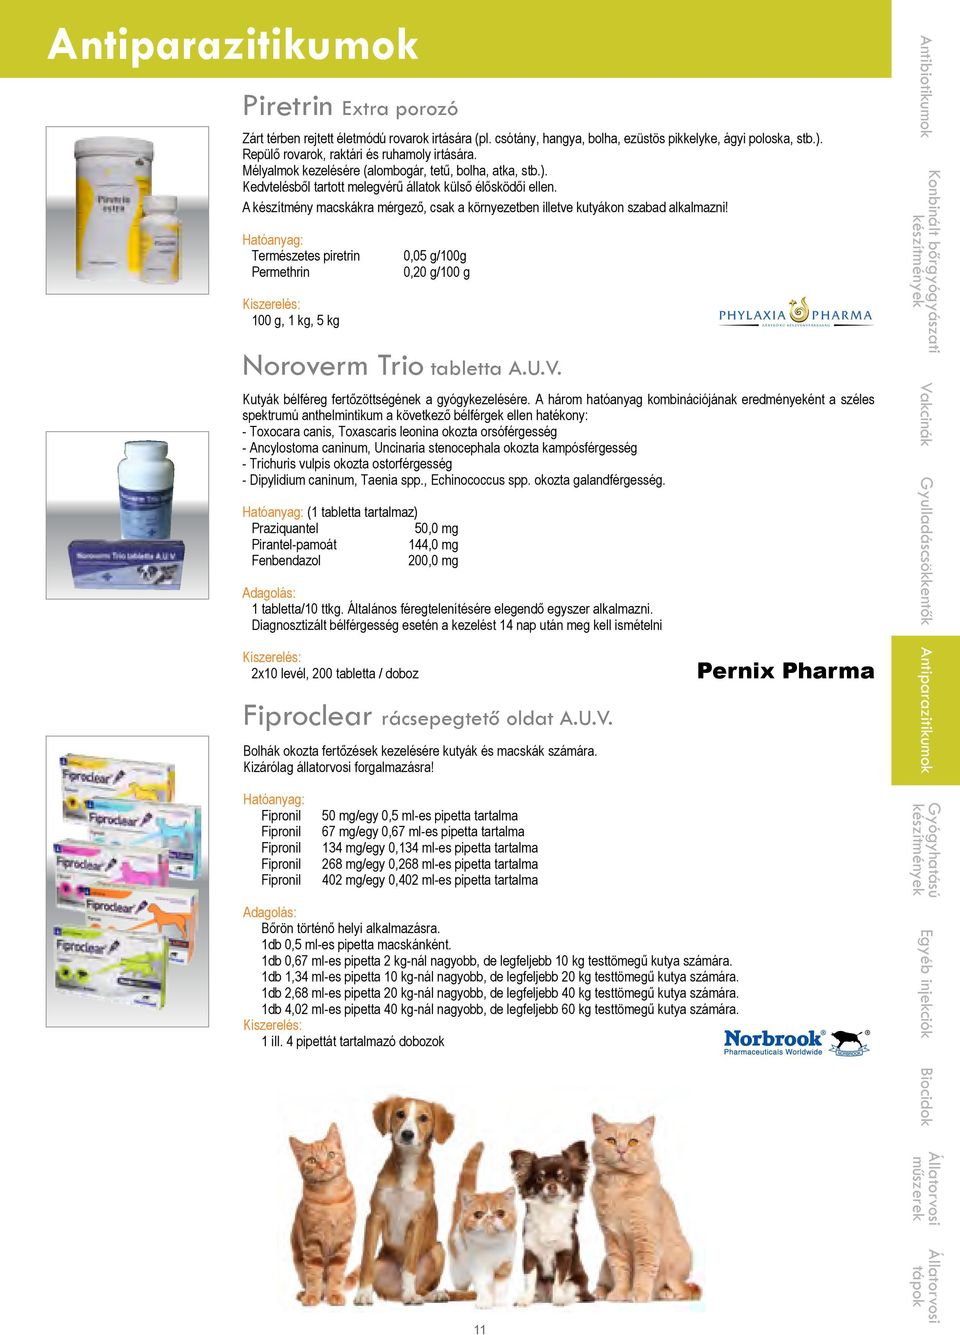 Endoectoparazitikumok - PDF Ingyenes letöltés